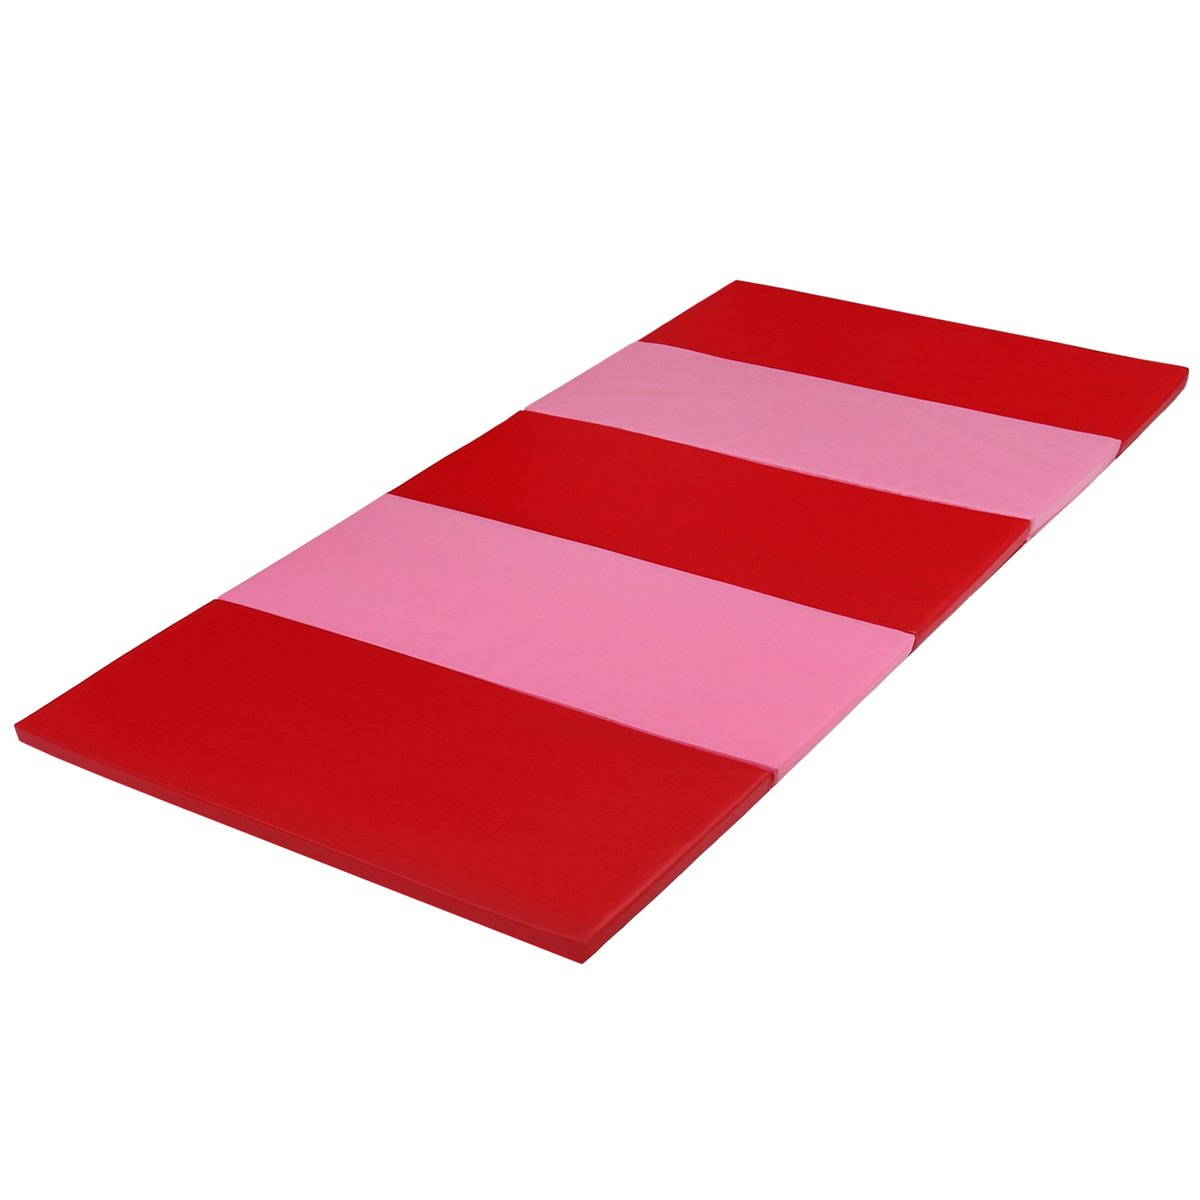 PLUFSIG Czerwono-różowa, składana mata gimnastyczna, 78x185 cm IKEA Uniwersalny